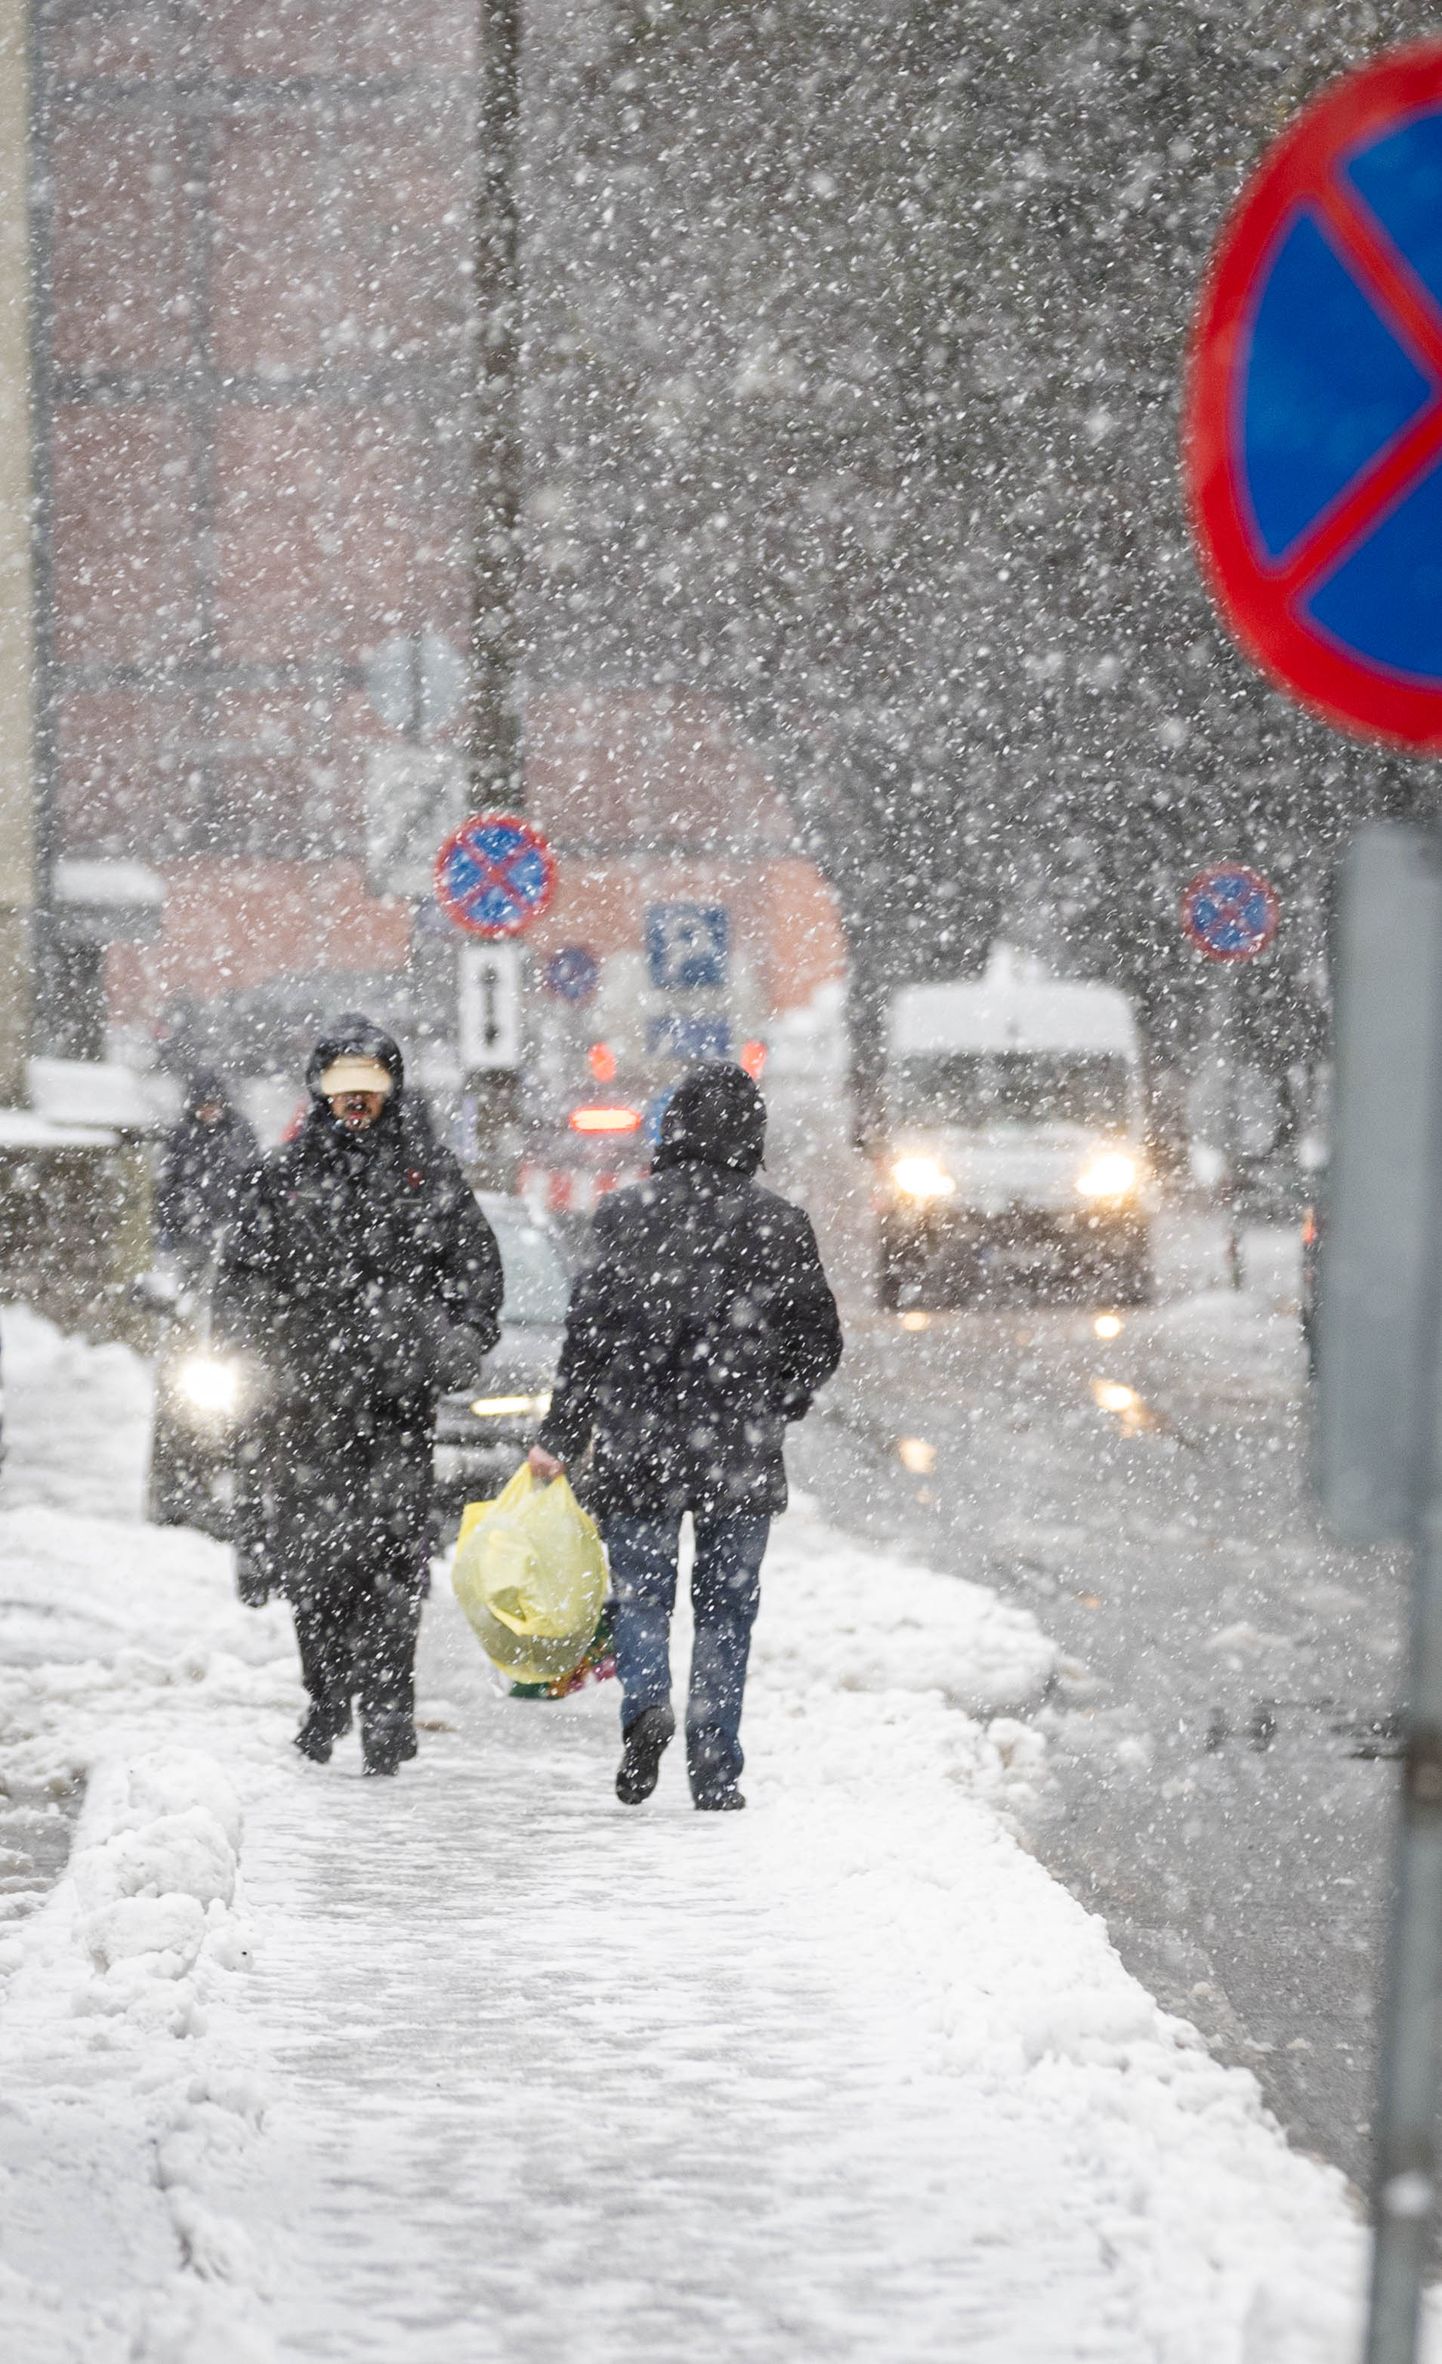 Inimesed liikumas talvises Tallinna kesklinnas. Foto on illustreeriv.